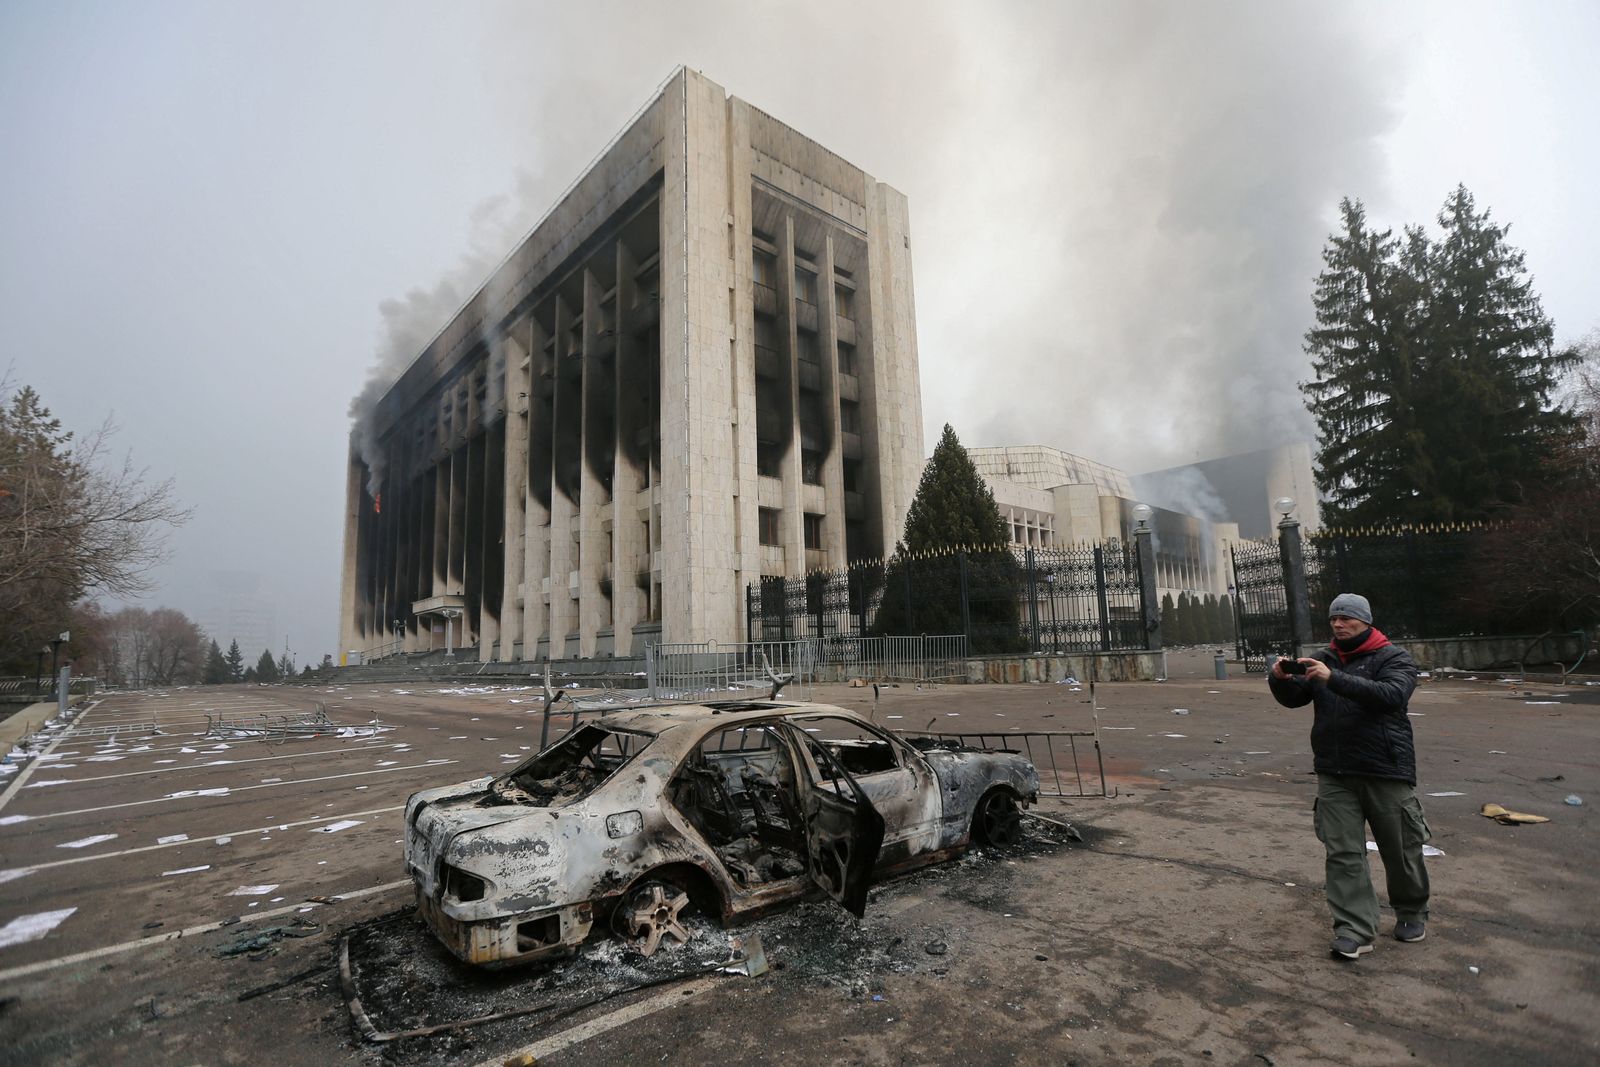 مبنى مكتب العمدة الذي أضرمت فيه النيران خلال الاحتجاجات التي اندلعت بسبب زيادة أسعار الوقود في ألما آتا، كازاخستان، 6 يناير2022 - REUTERS